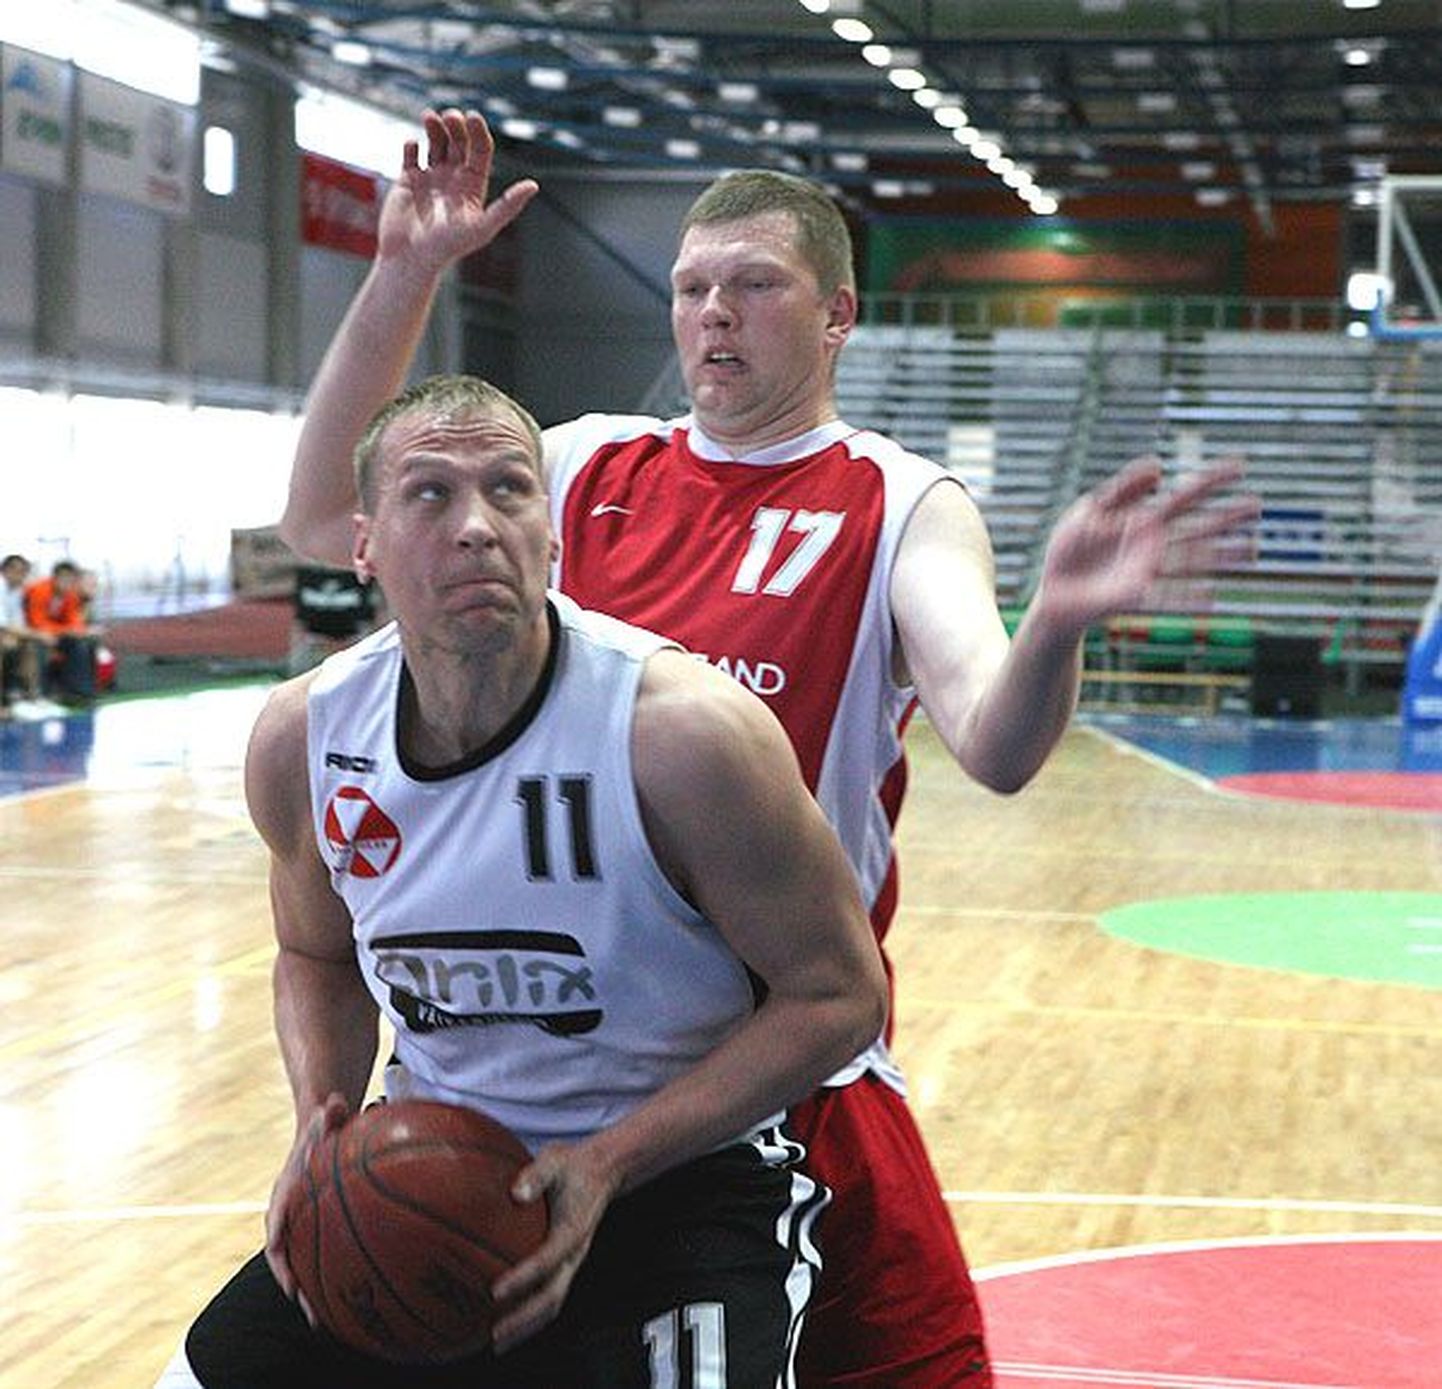 Hetk mullusest Tartu korvpalliliiga finaalmängust, kus olid vastamisi SK Nordic Basket/Arilix ja Atlantis.